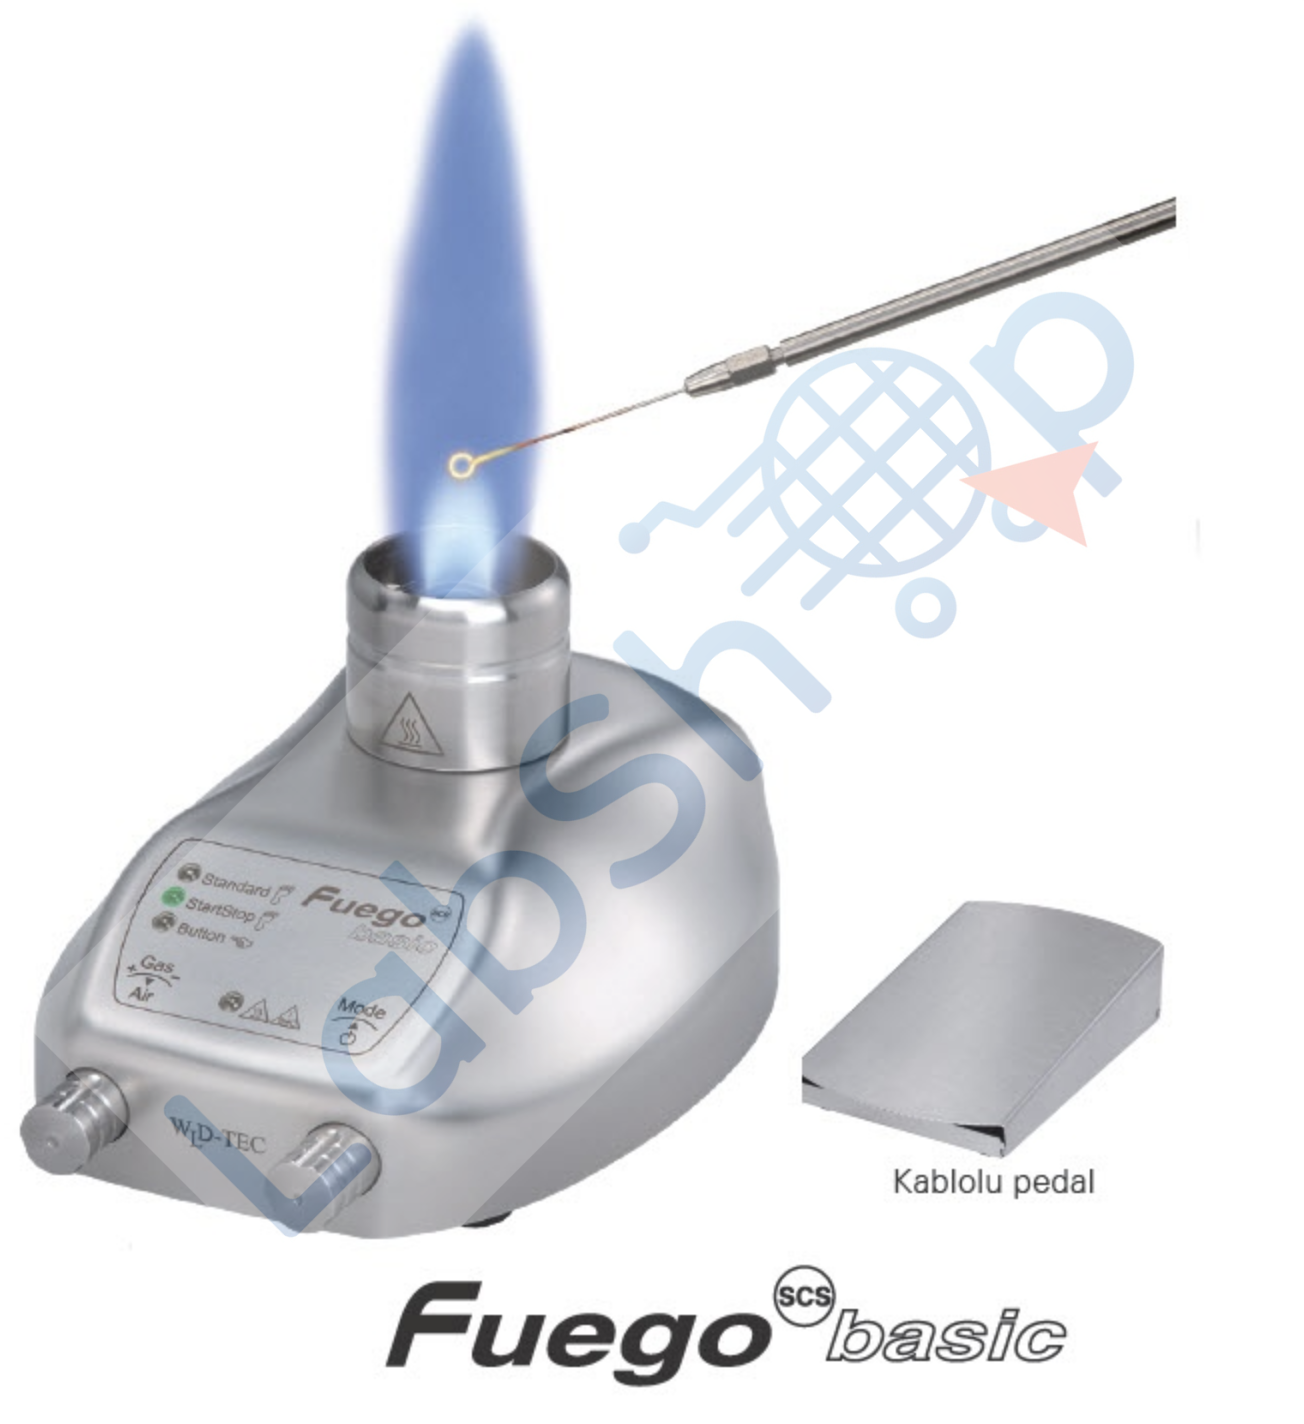 Fuego Scs Basic Gazlı Otomatik Sterilizatör  Ayak Pedallı , Doğalgaz ve LPG ile Çalışabilme